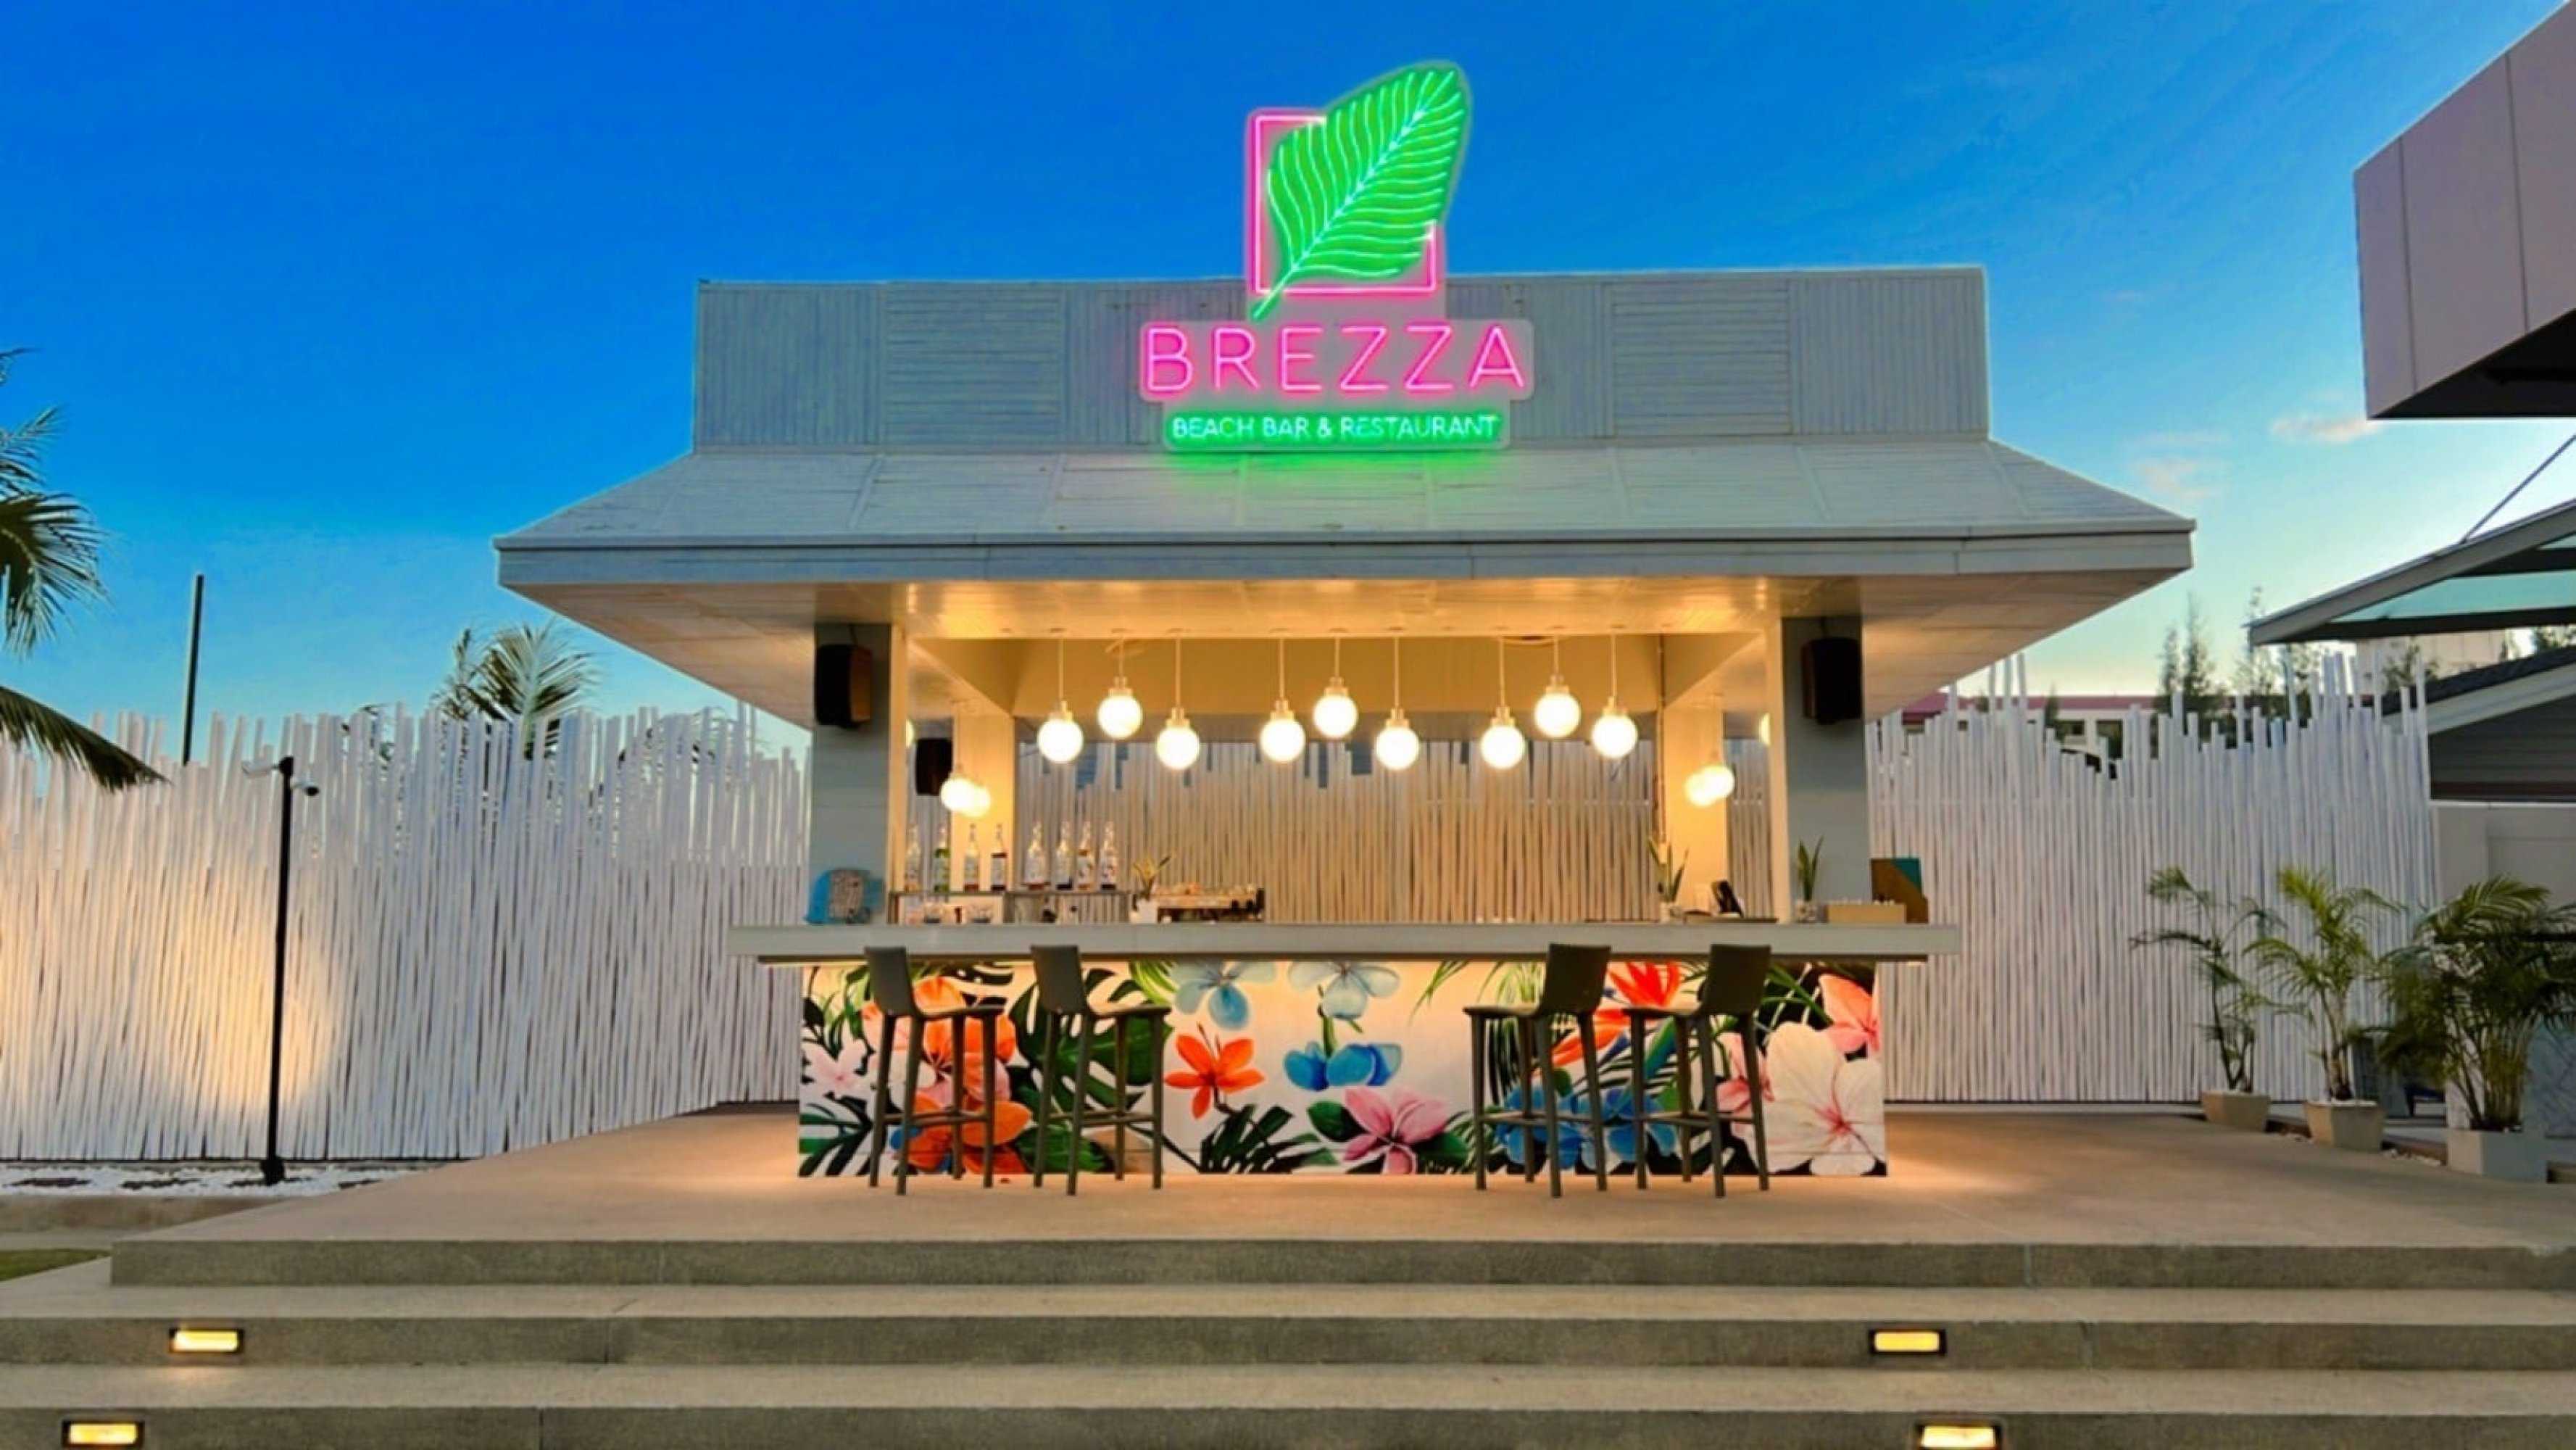 Brezza Beach Bar & Restaurant : เพชรบุรี